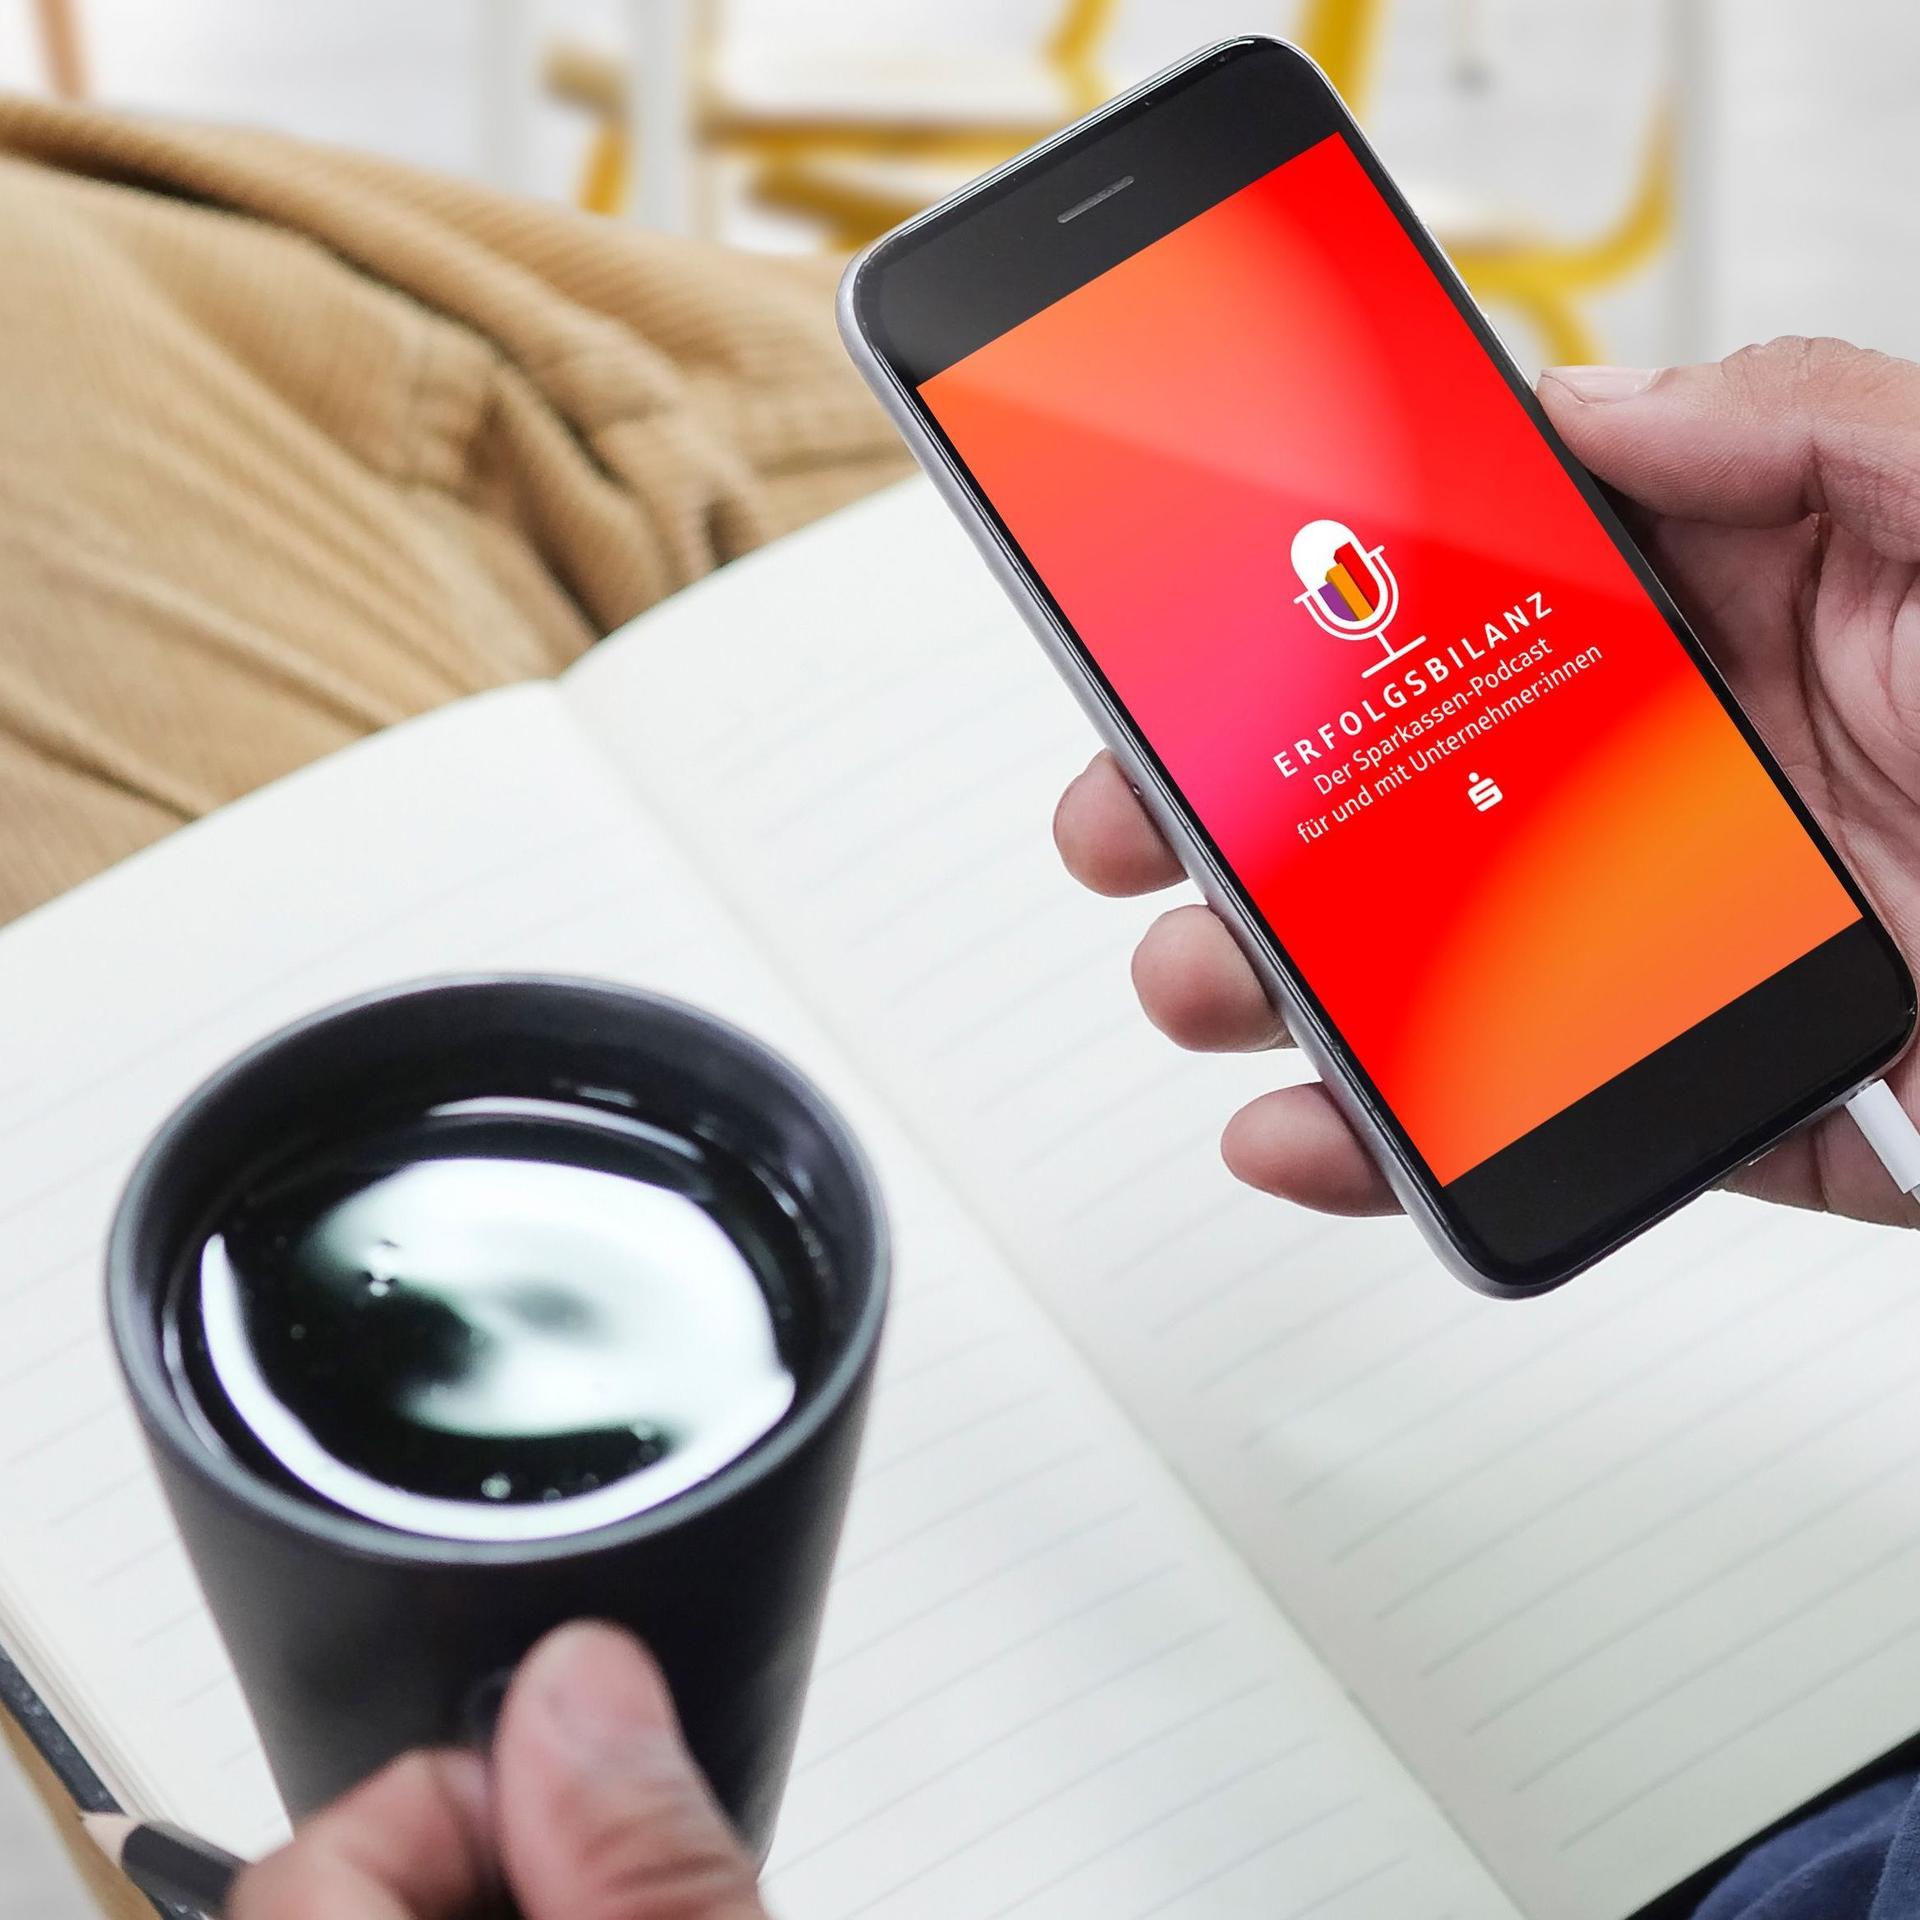 in Notizbuch liegt auf einem Bein.Kaffeetasse in der linken Hand. Smartphone in der rechten Hand. Das Display ist orange mit Logo Erfolgsbilanz.